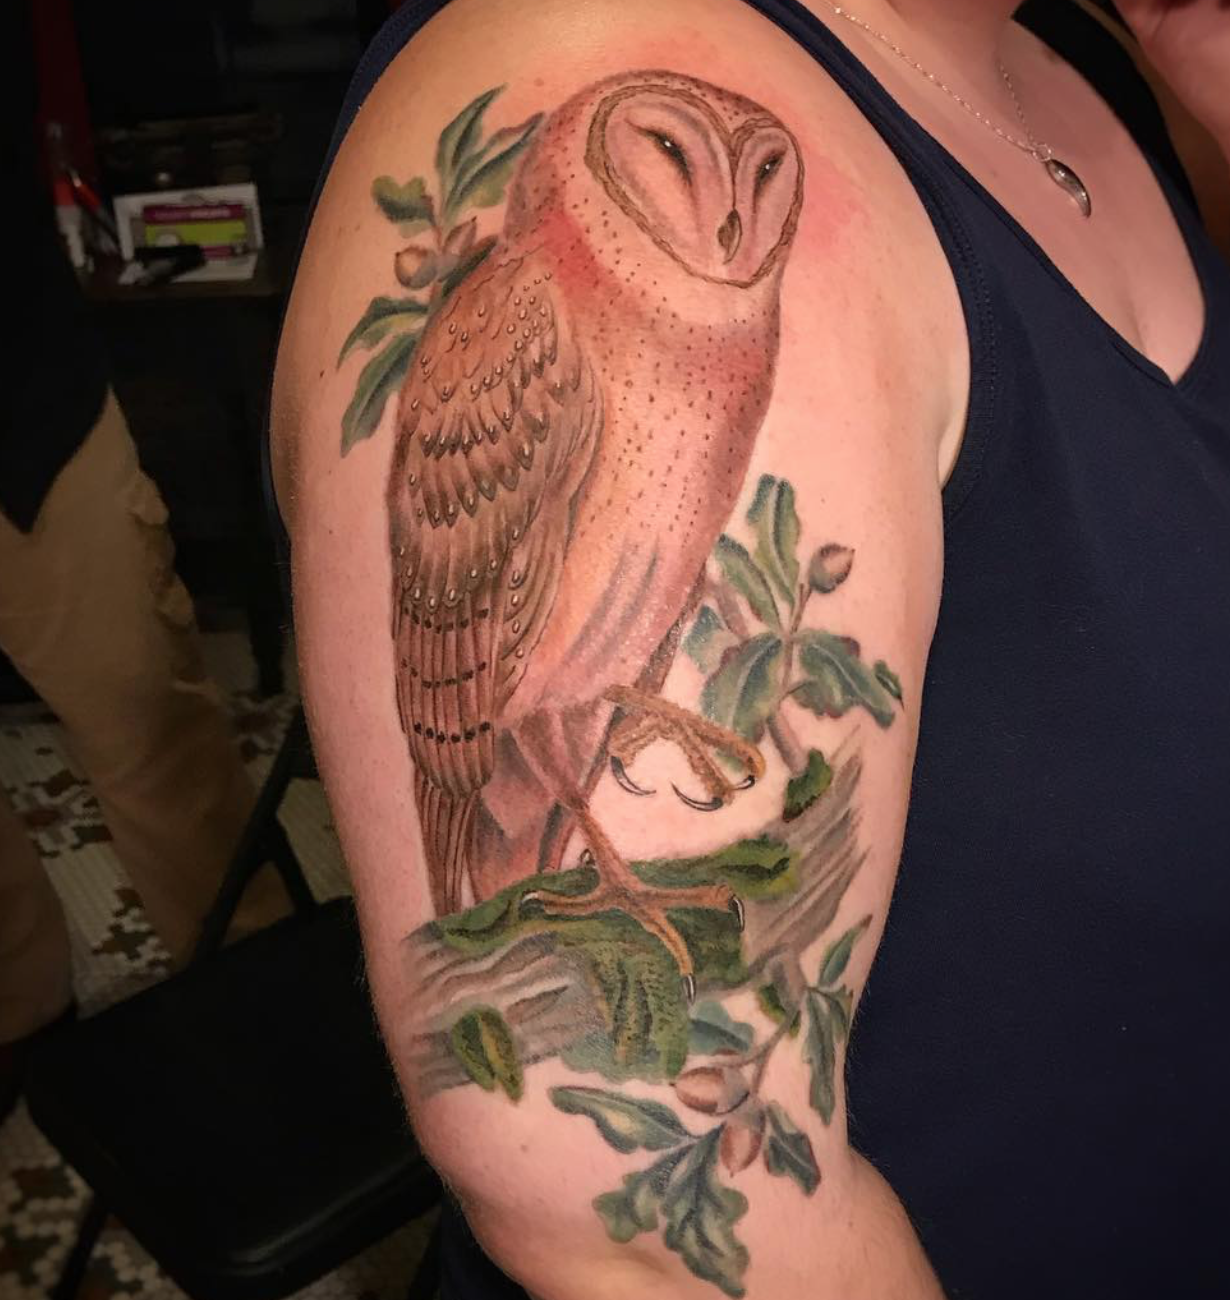 Owl tattoo by Tara Morgan